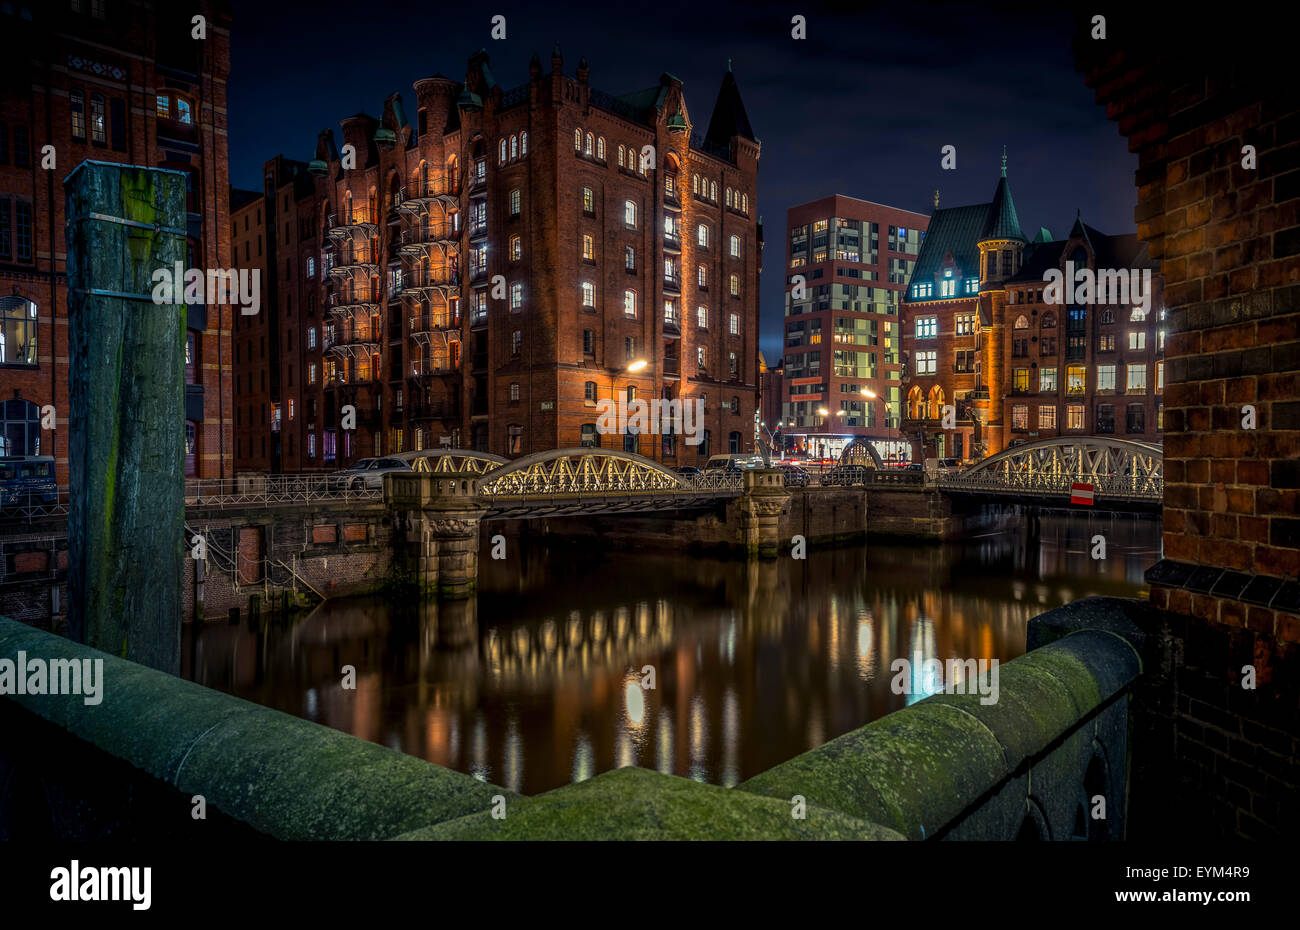 Germania, Amburgo, Speicherstadt (warehouse district), Pickhuben, notte night shot, Foto Stock